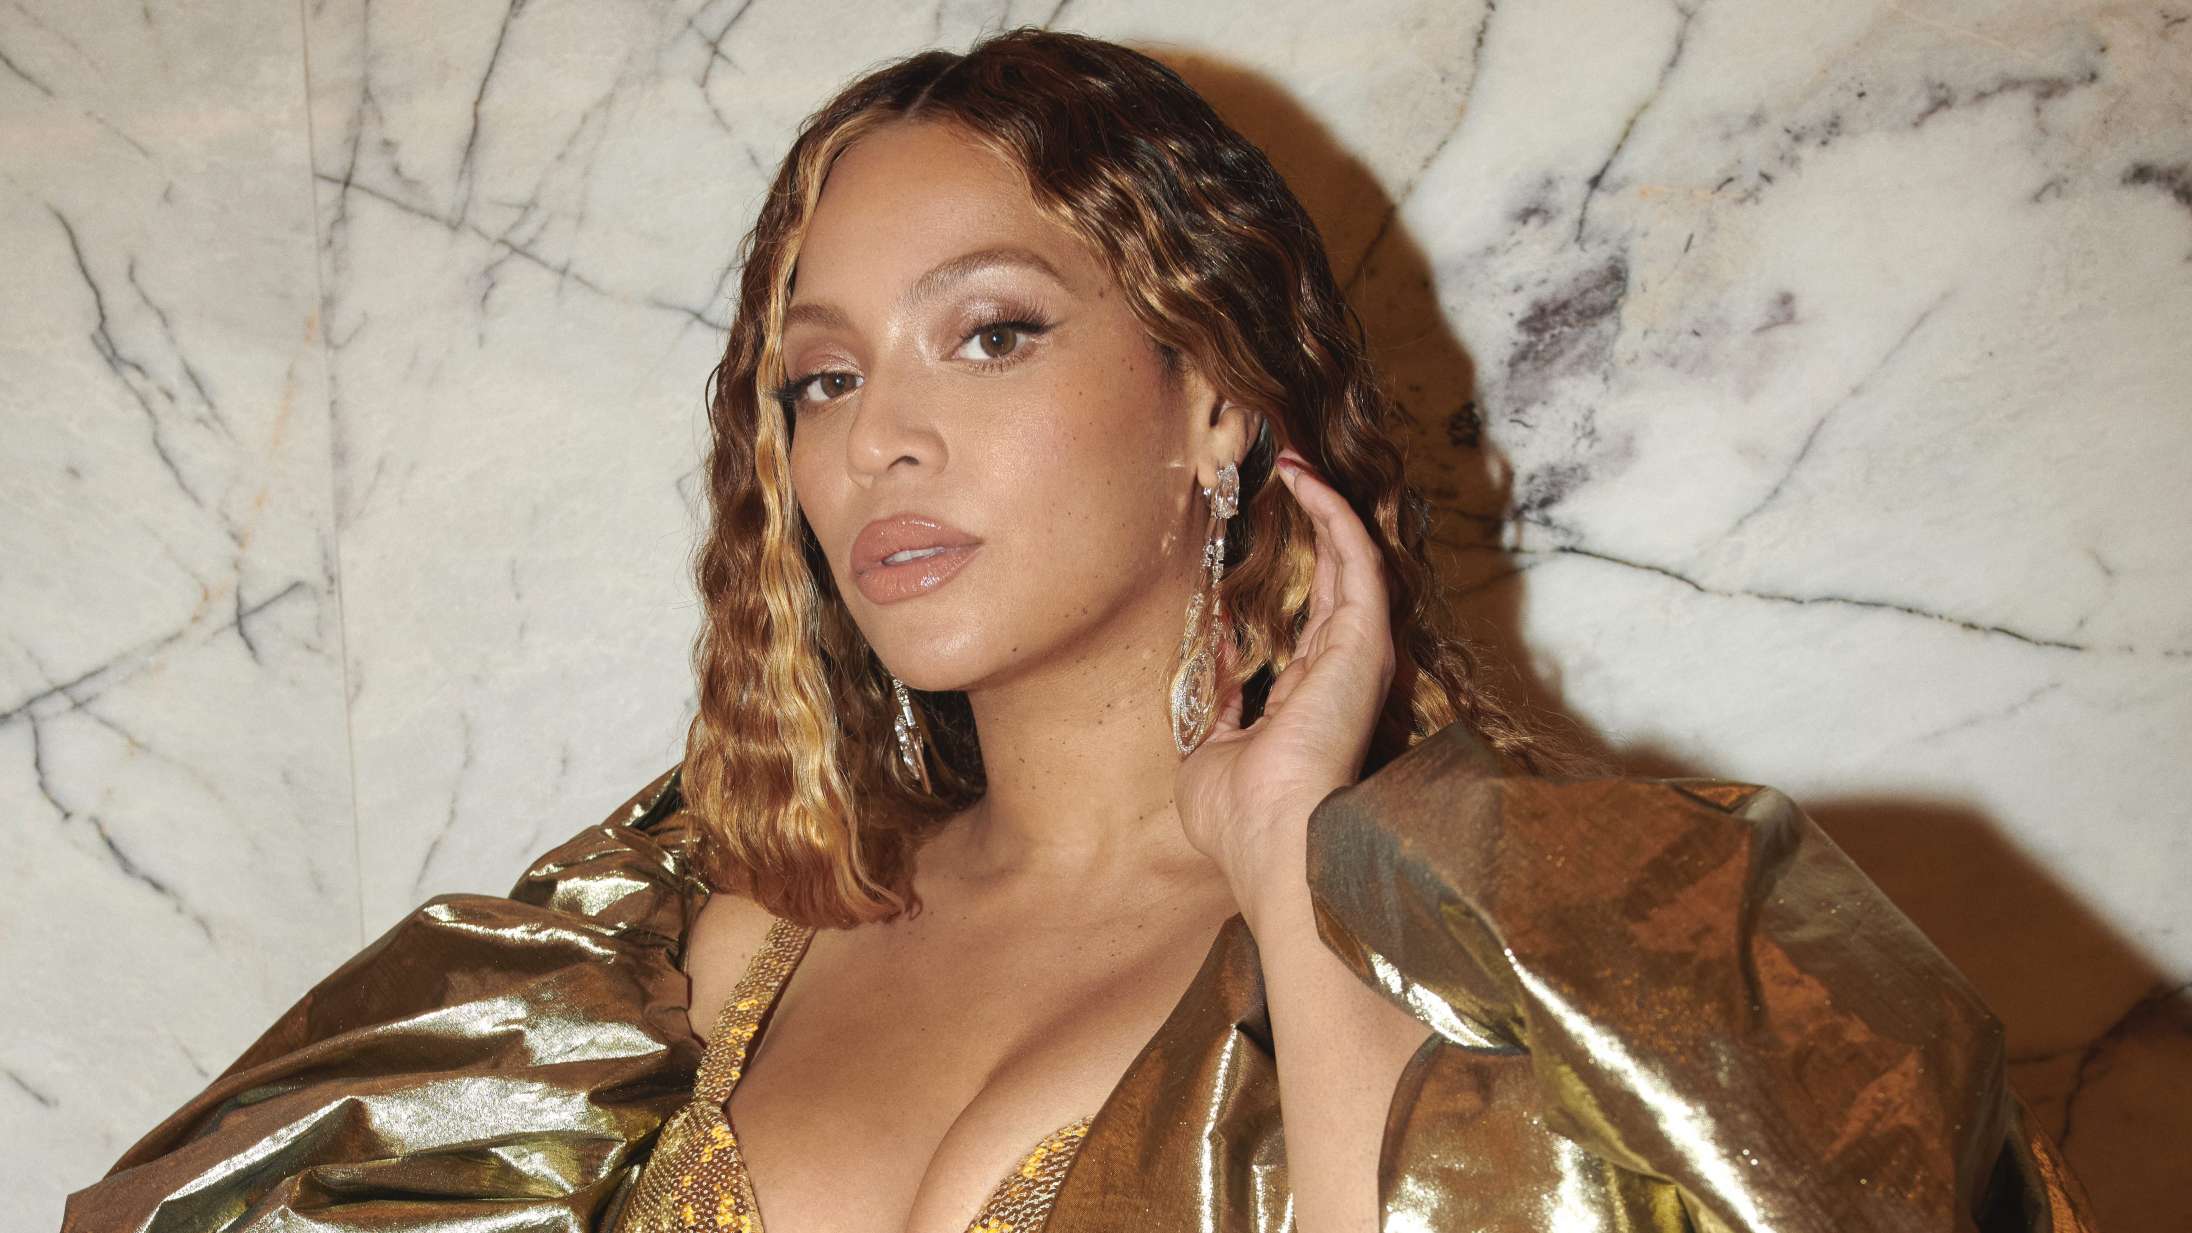 Ikonisk album fylder 10 år – det fejrer Beyoncé med ny sangudgivelse